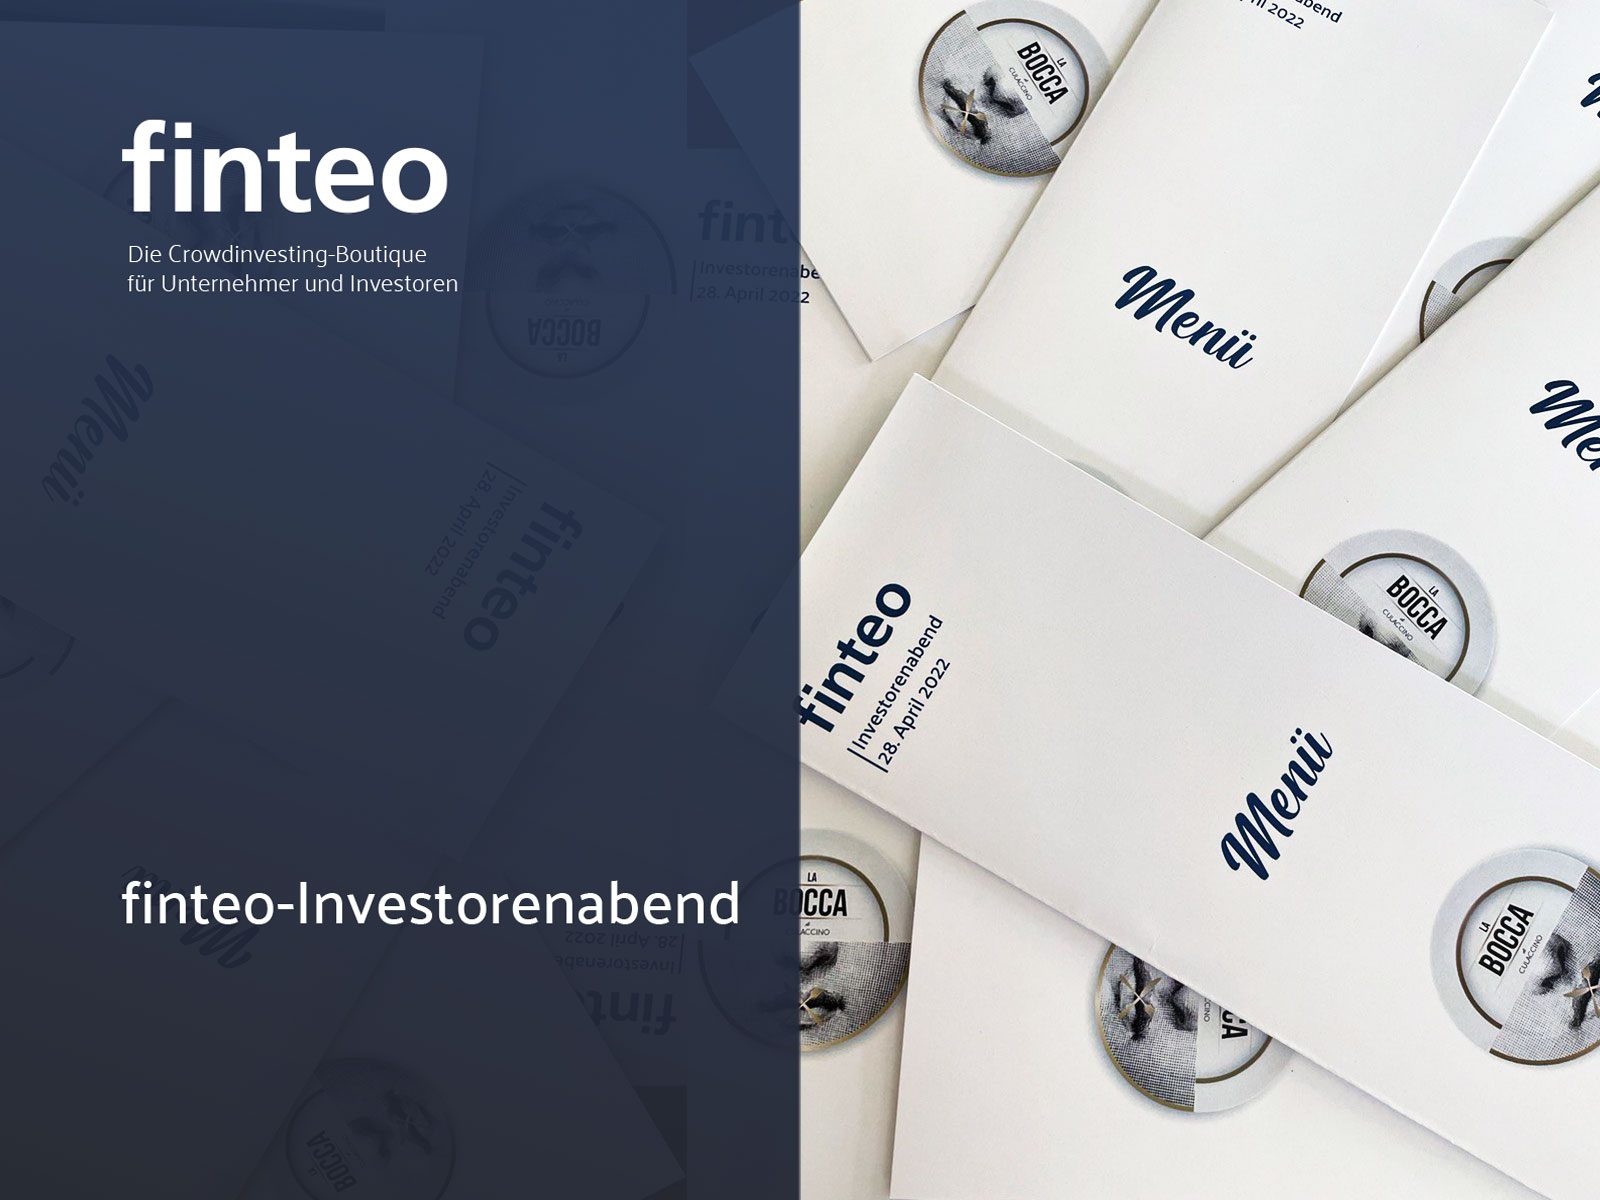 finteo.de|finteo-Investorenabend-2022-04-29-Titelbild-Investorenabend